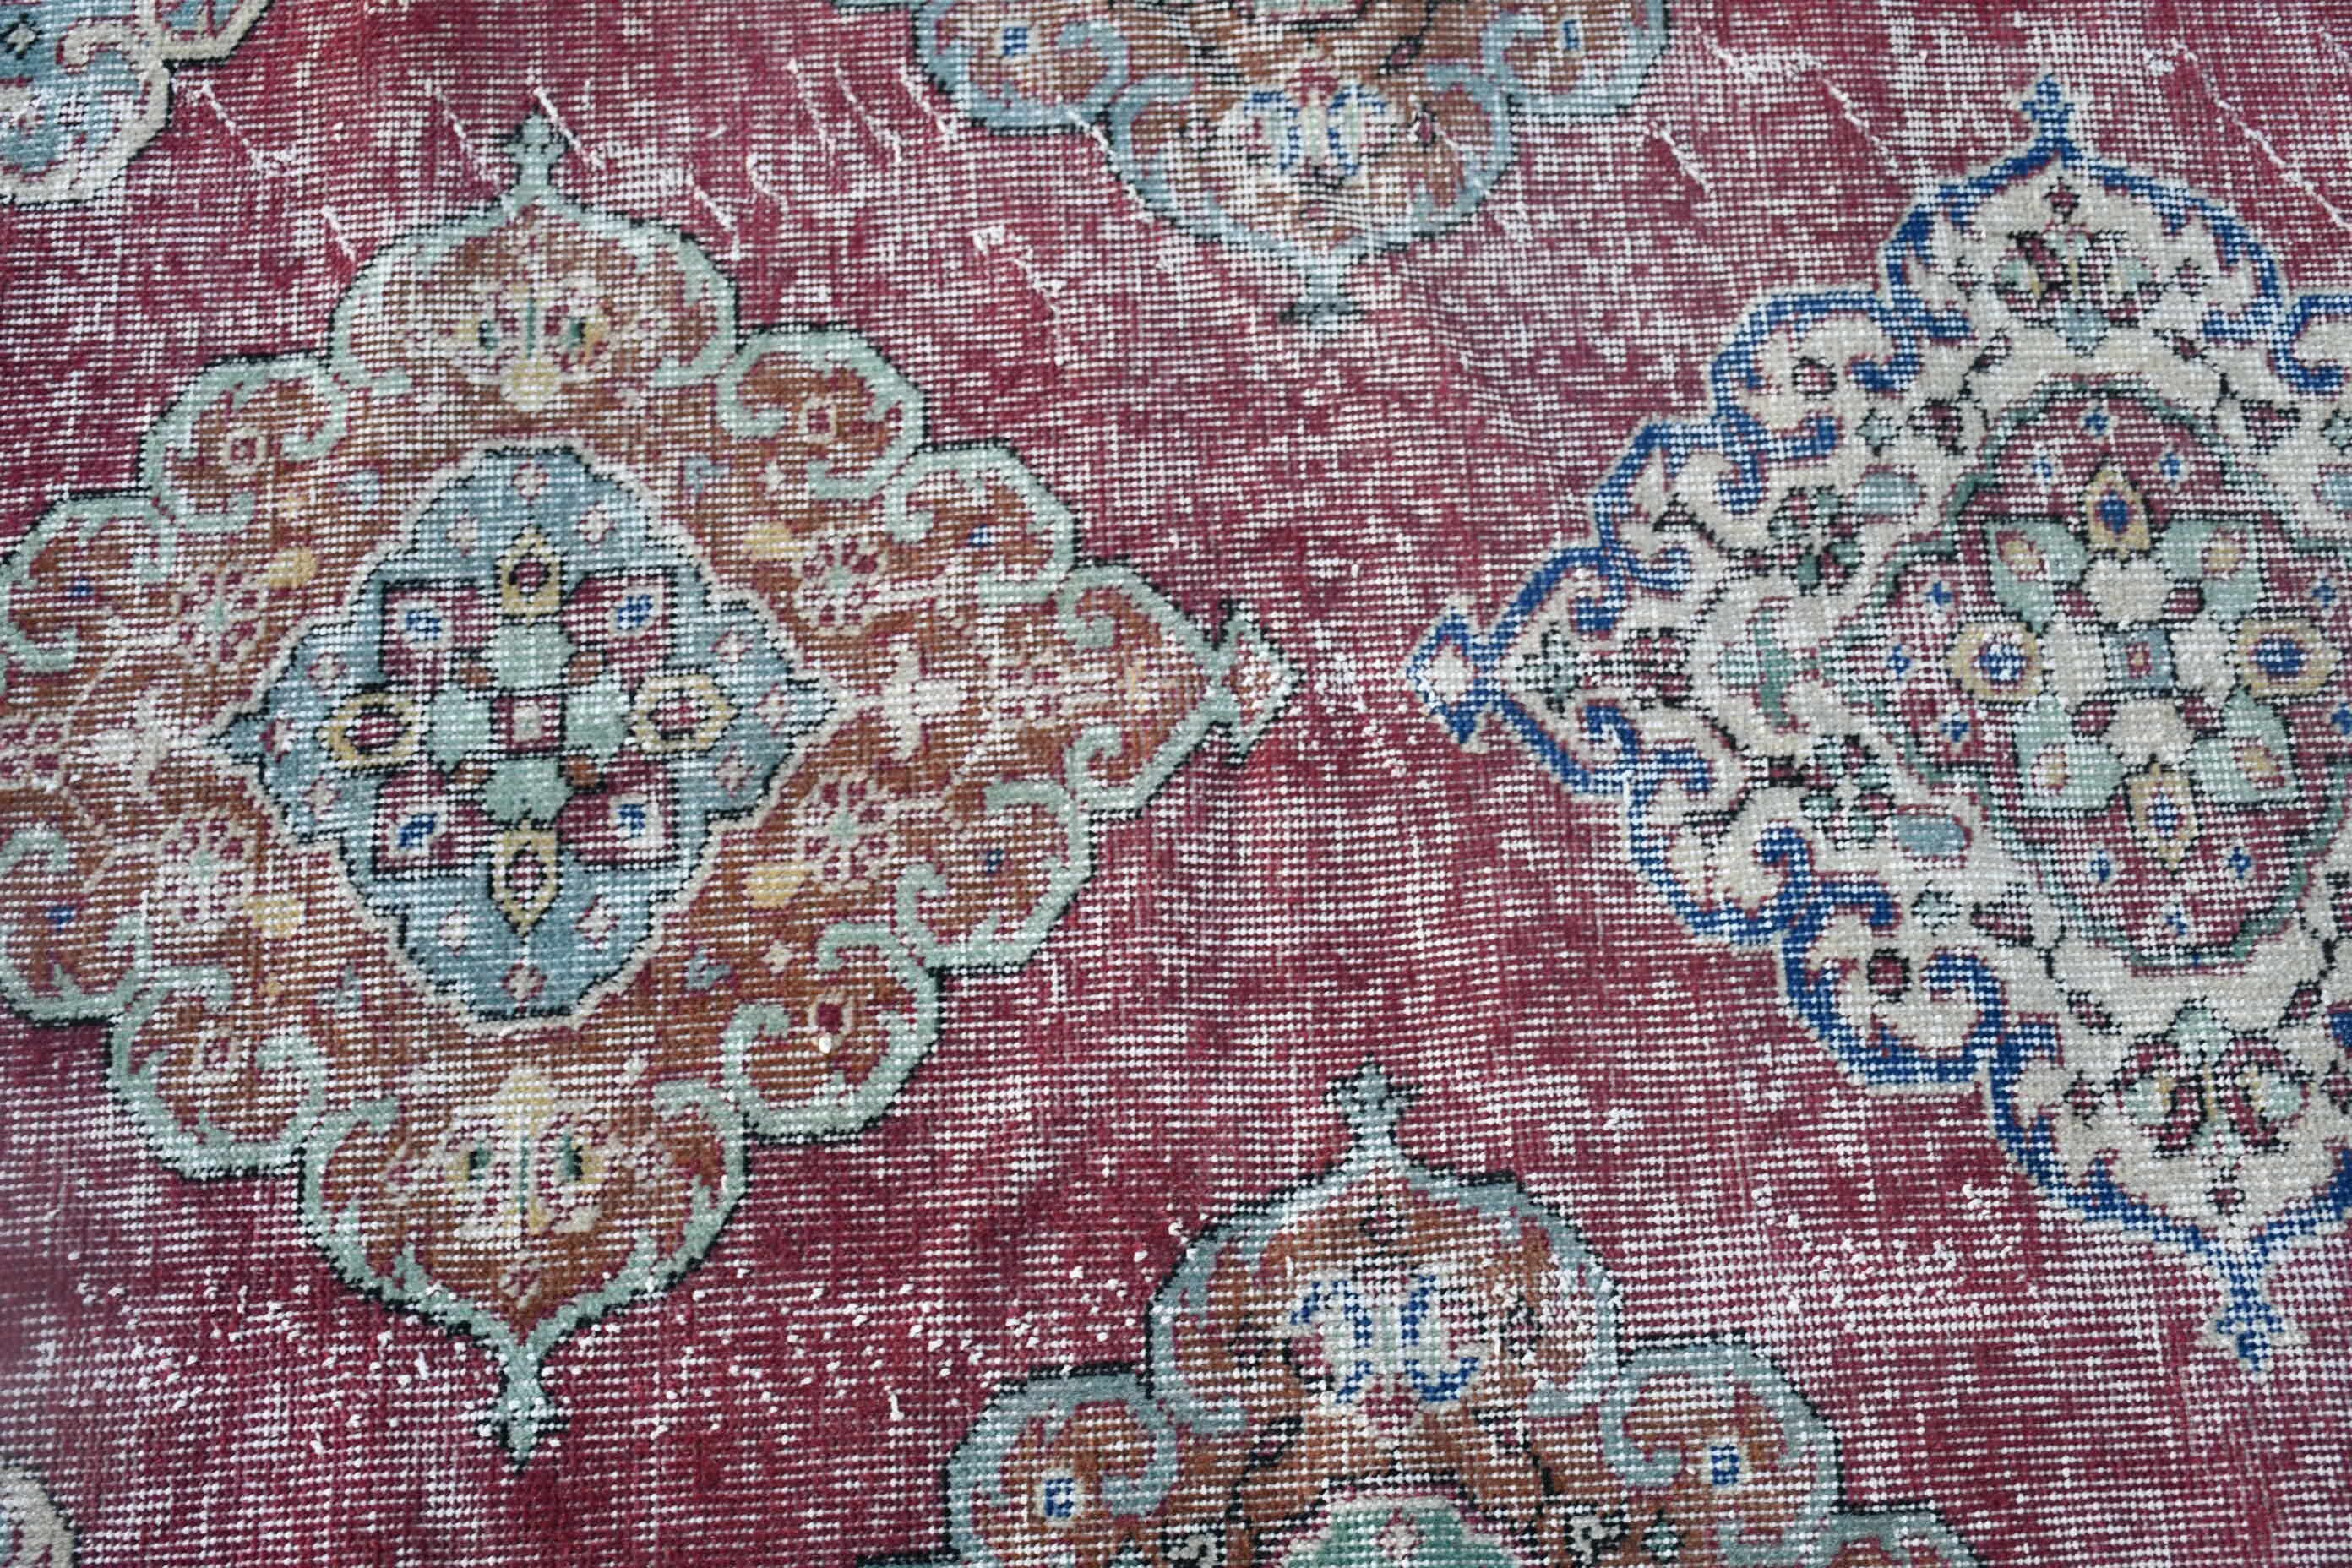 Turkish Rug, Door Mat Rug, Abstract Rugs, Vintage Rug, Purple  2.9x4 ft Small Rug, Home Decor Rug, Wall Hanging Rug, Floor Rug